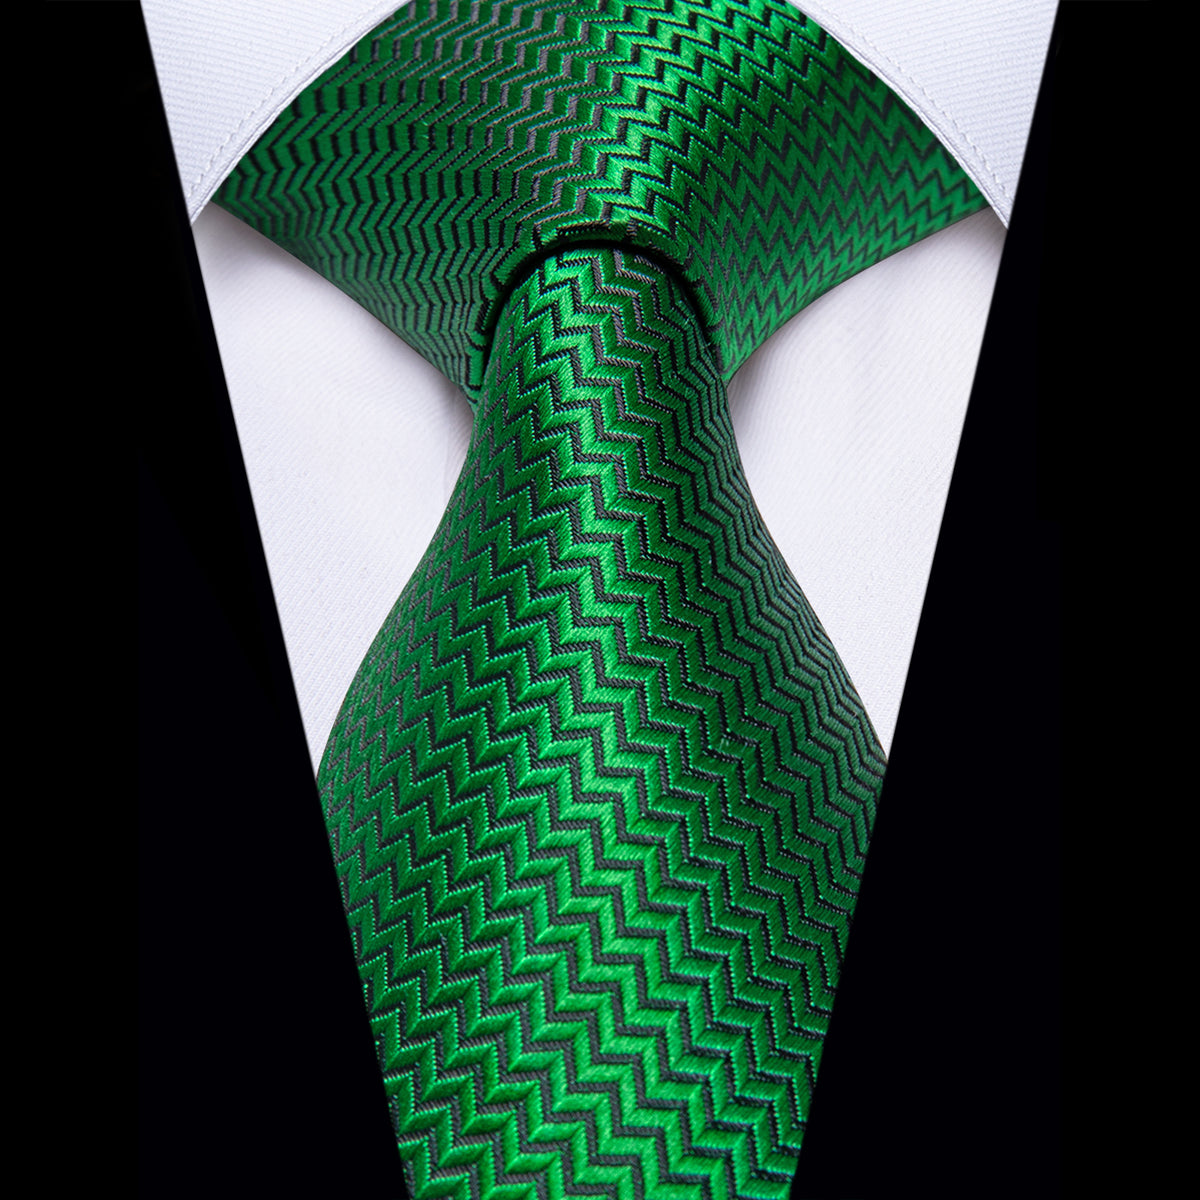 Green Irregular Striped Silk Necktie